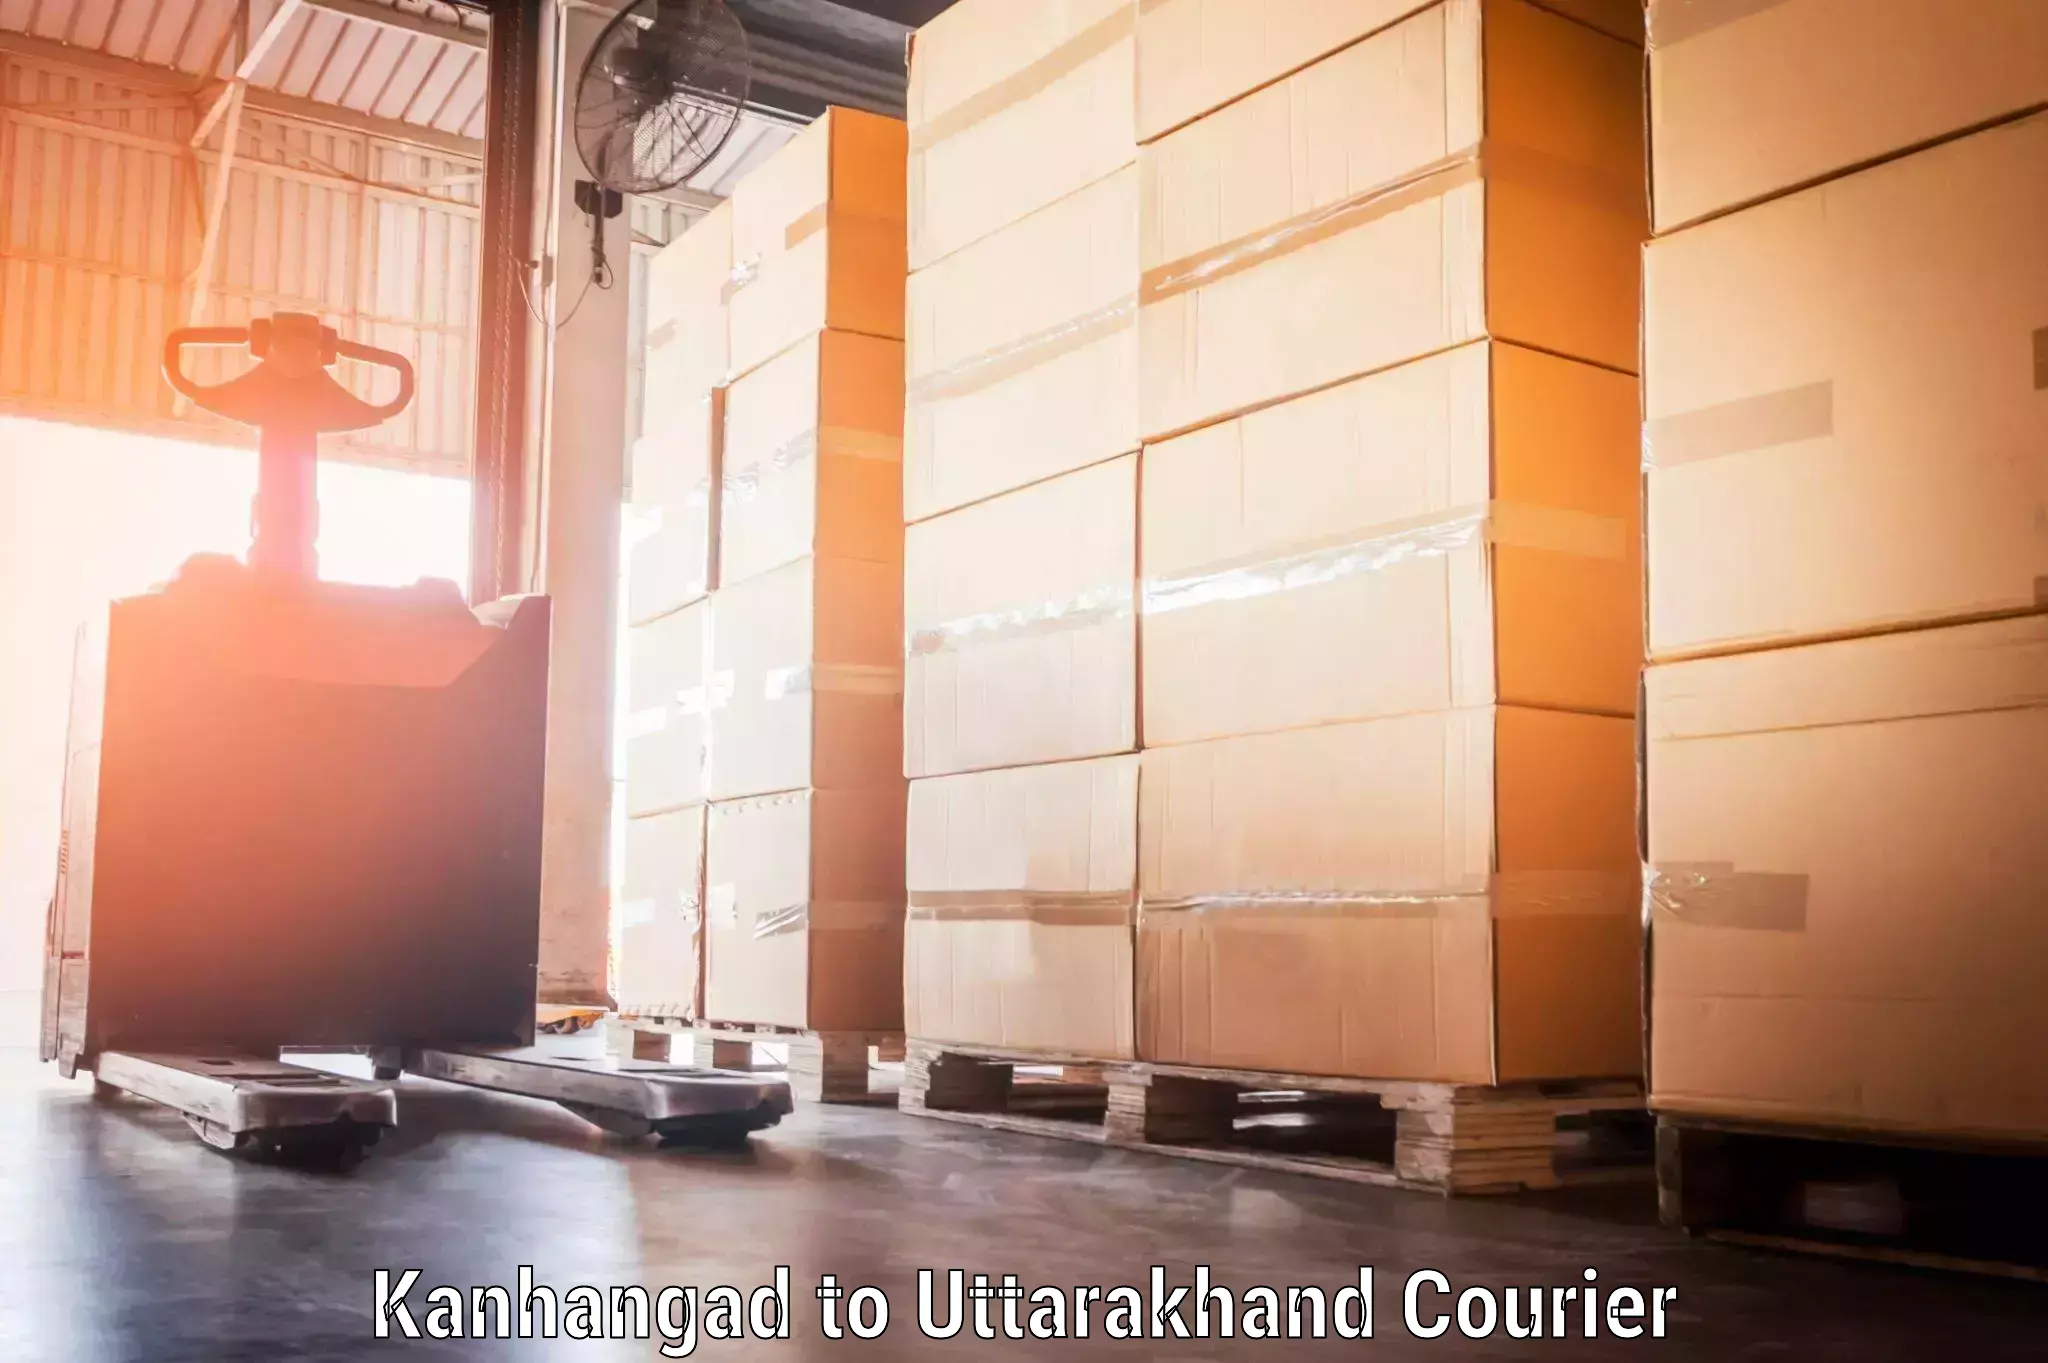 Timely baggage transport in Kanhangad to Uttarkashi